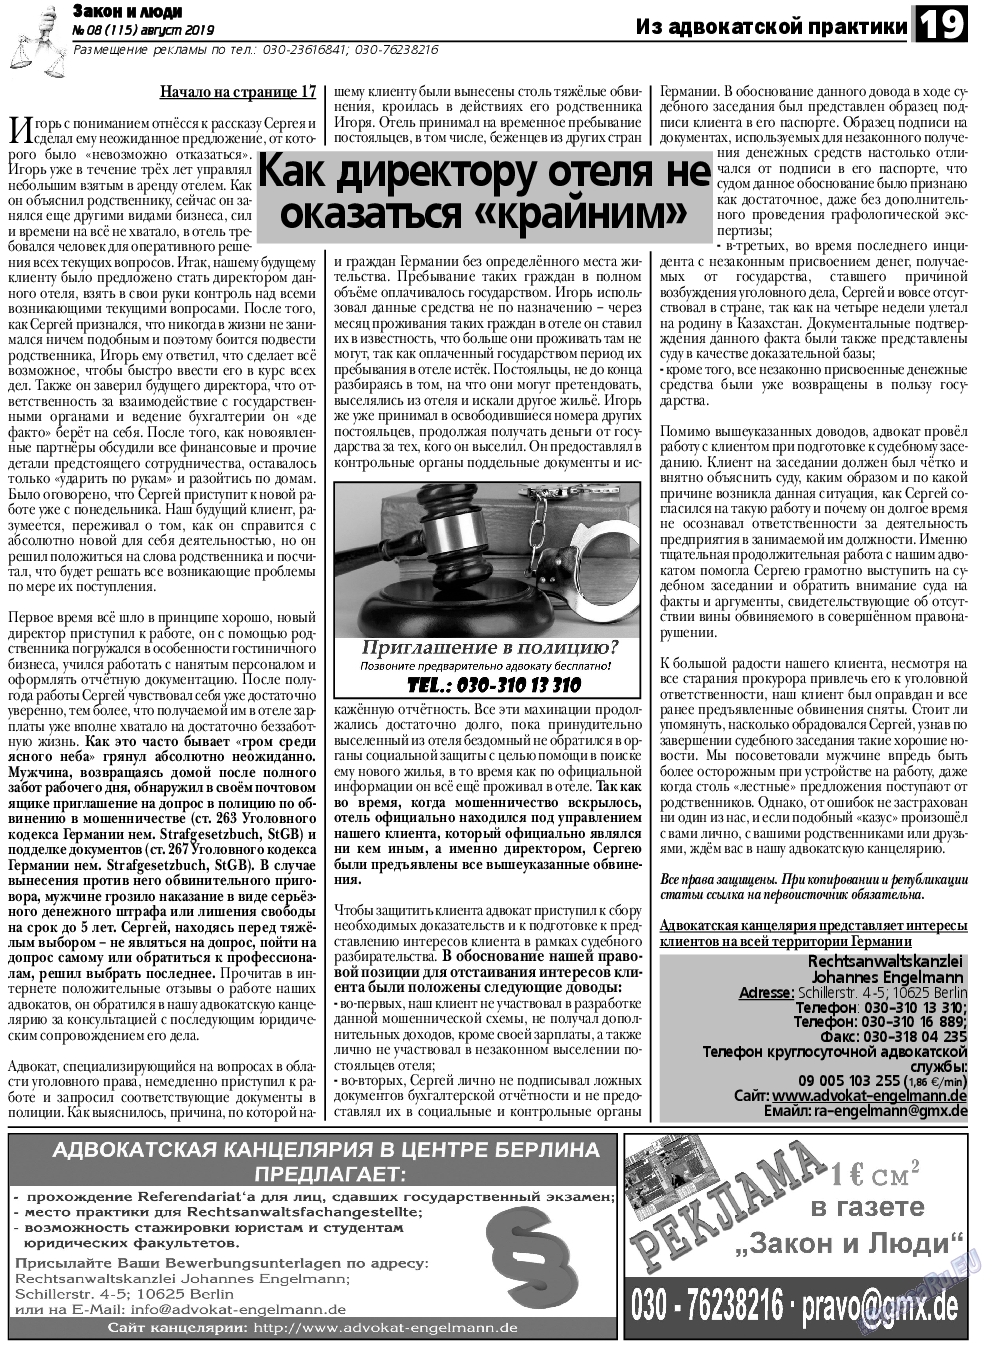 Закон и люди, газета. 2019 №8 стр.19